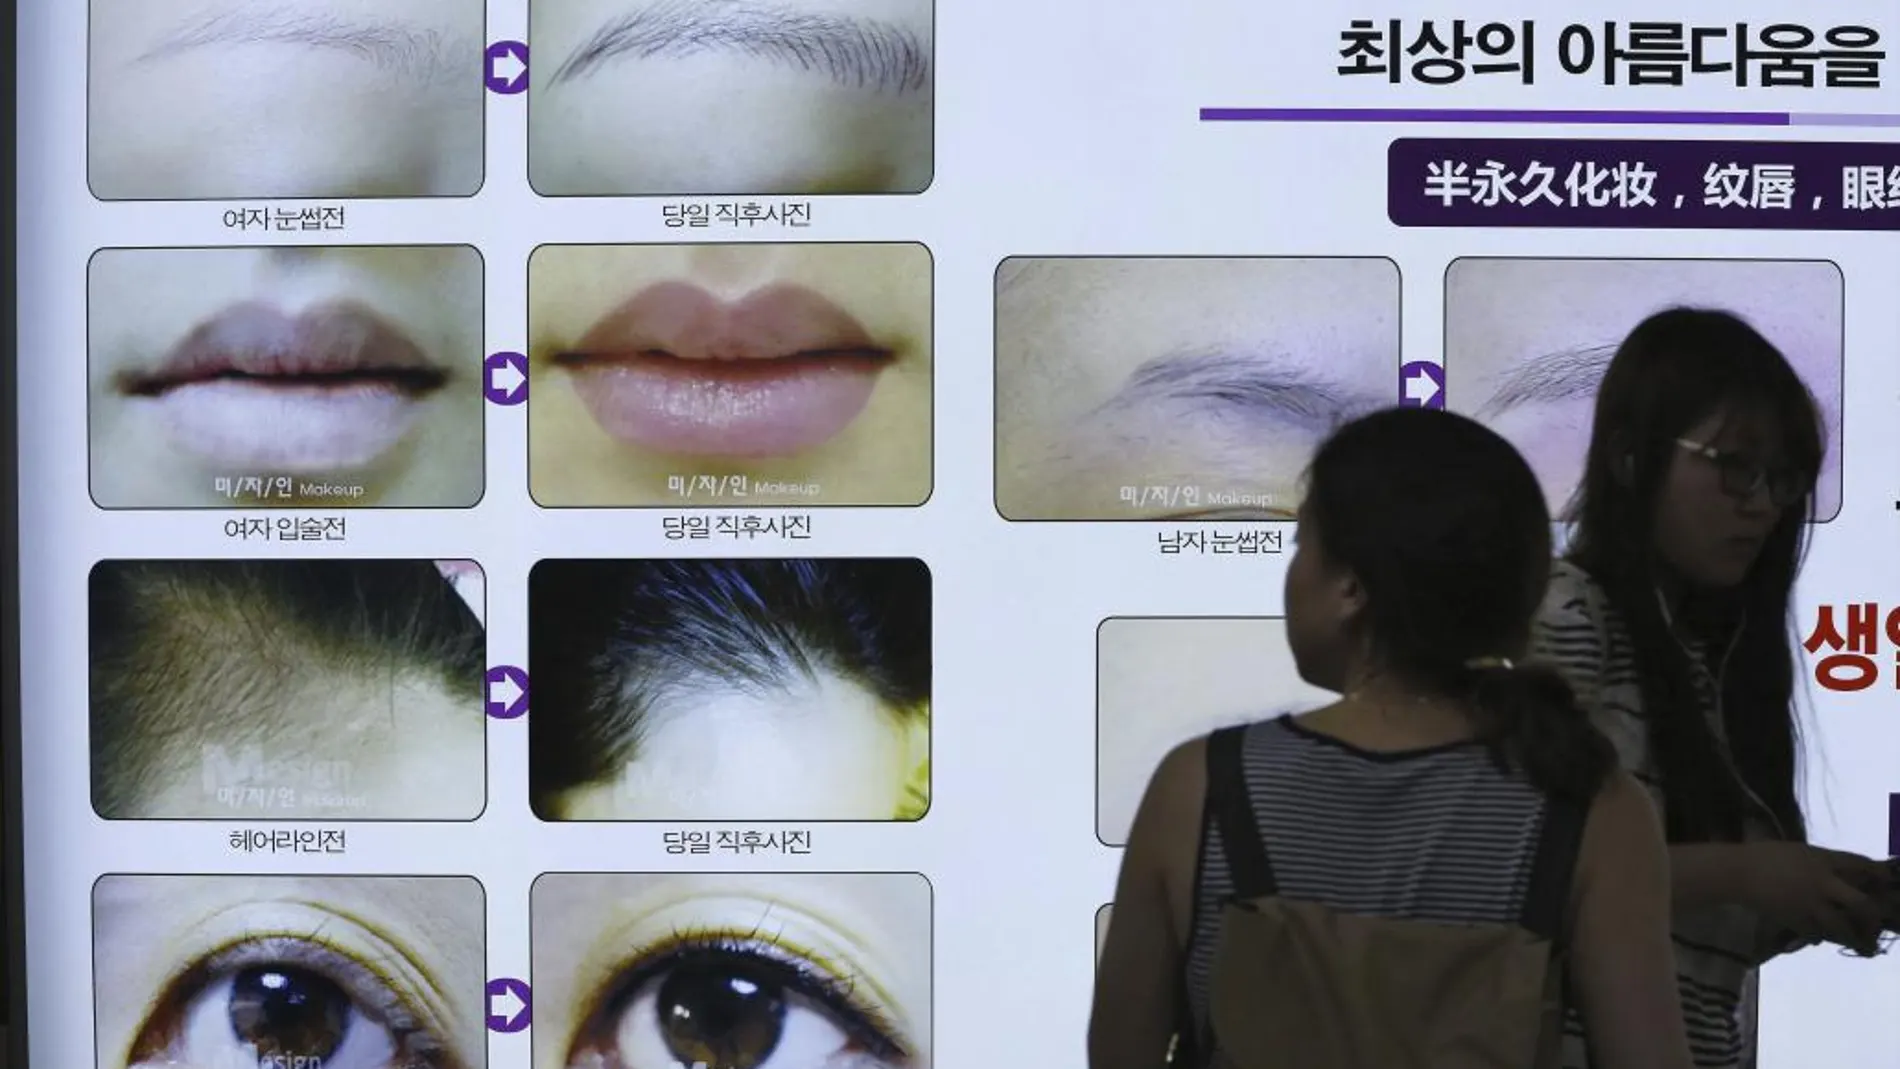 Una mujer observa un cartel publicitario en el metro en Seúl (Corea del Sur)